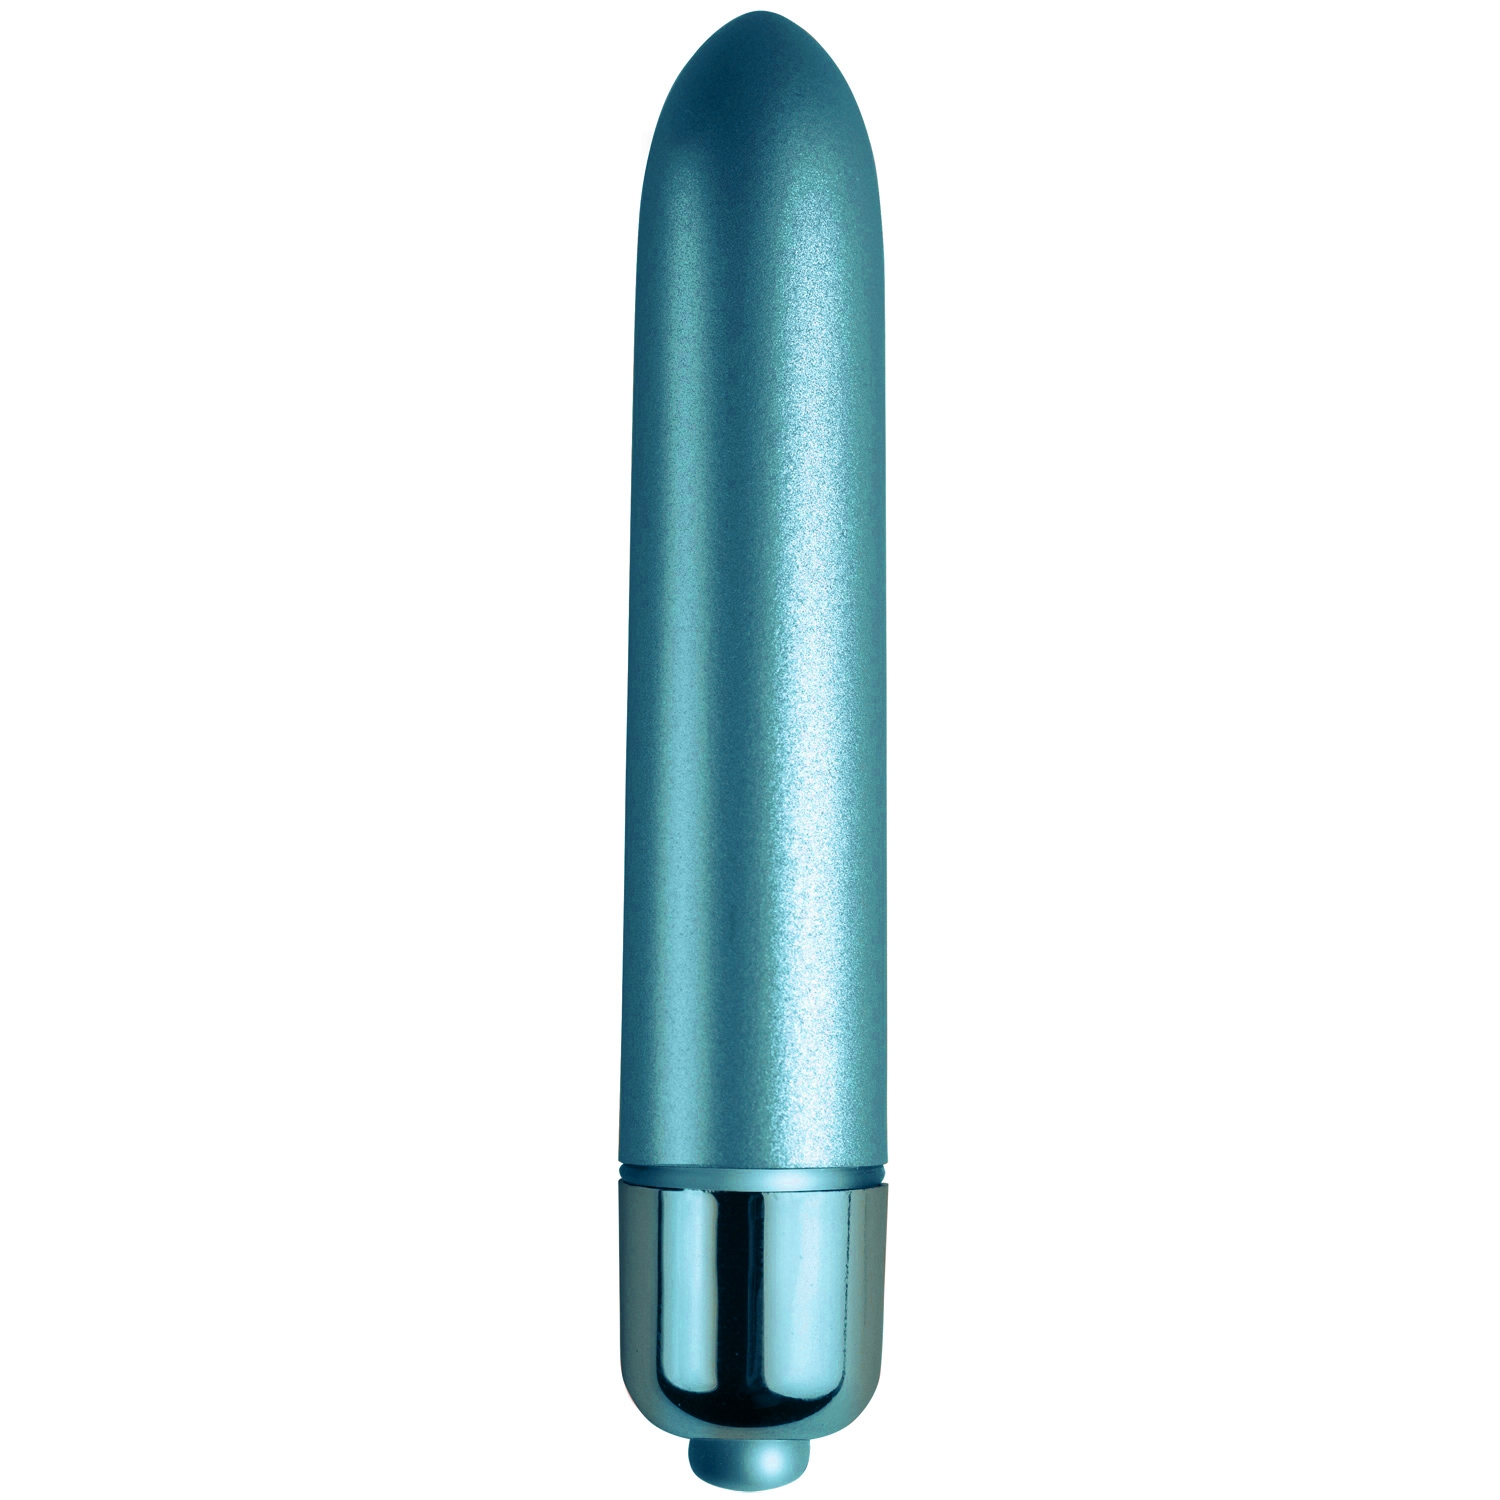 Rocks Off 90 mm Touch of Velvet Klitoris Vibrator - Turquoise